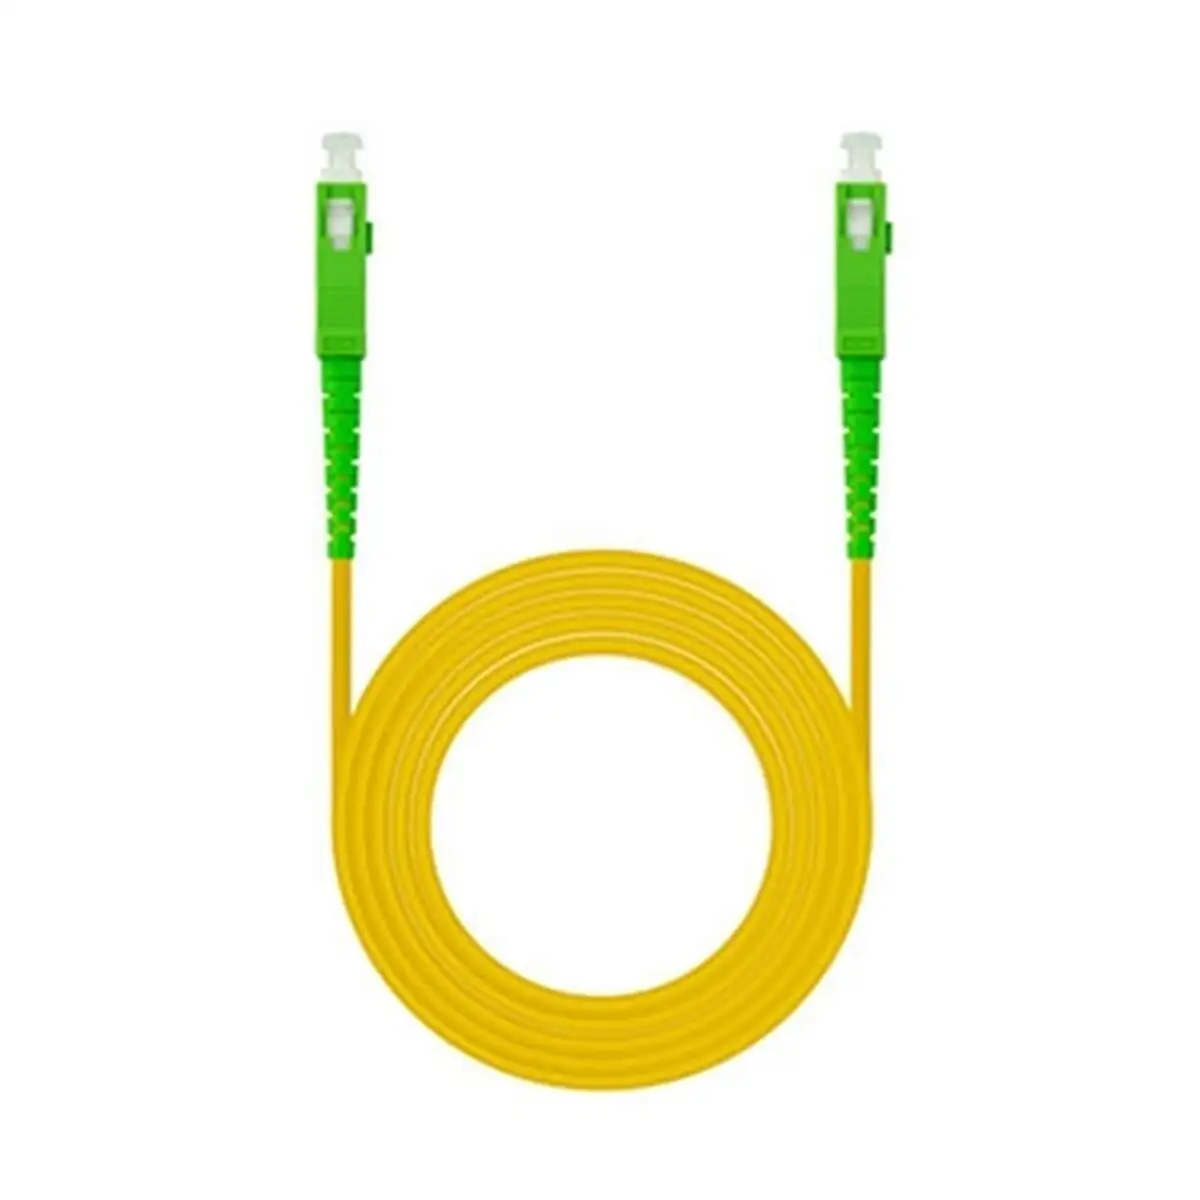 Cable a fibre optique nanocable 10 20 0001 1 m_2153. DIAYTAR SENEGAL - Où Choisir Devient une Découverte. Explorez notre boutique en ligne et trouvez des articles qui vous surprennent et vous ravissent à chaque clic.